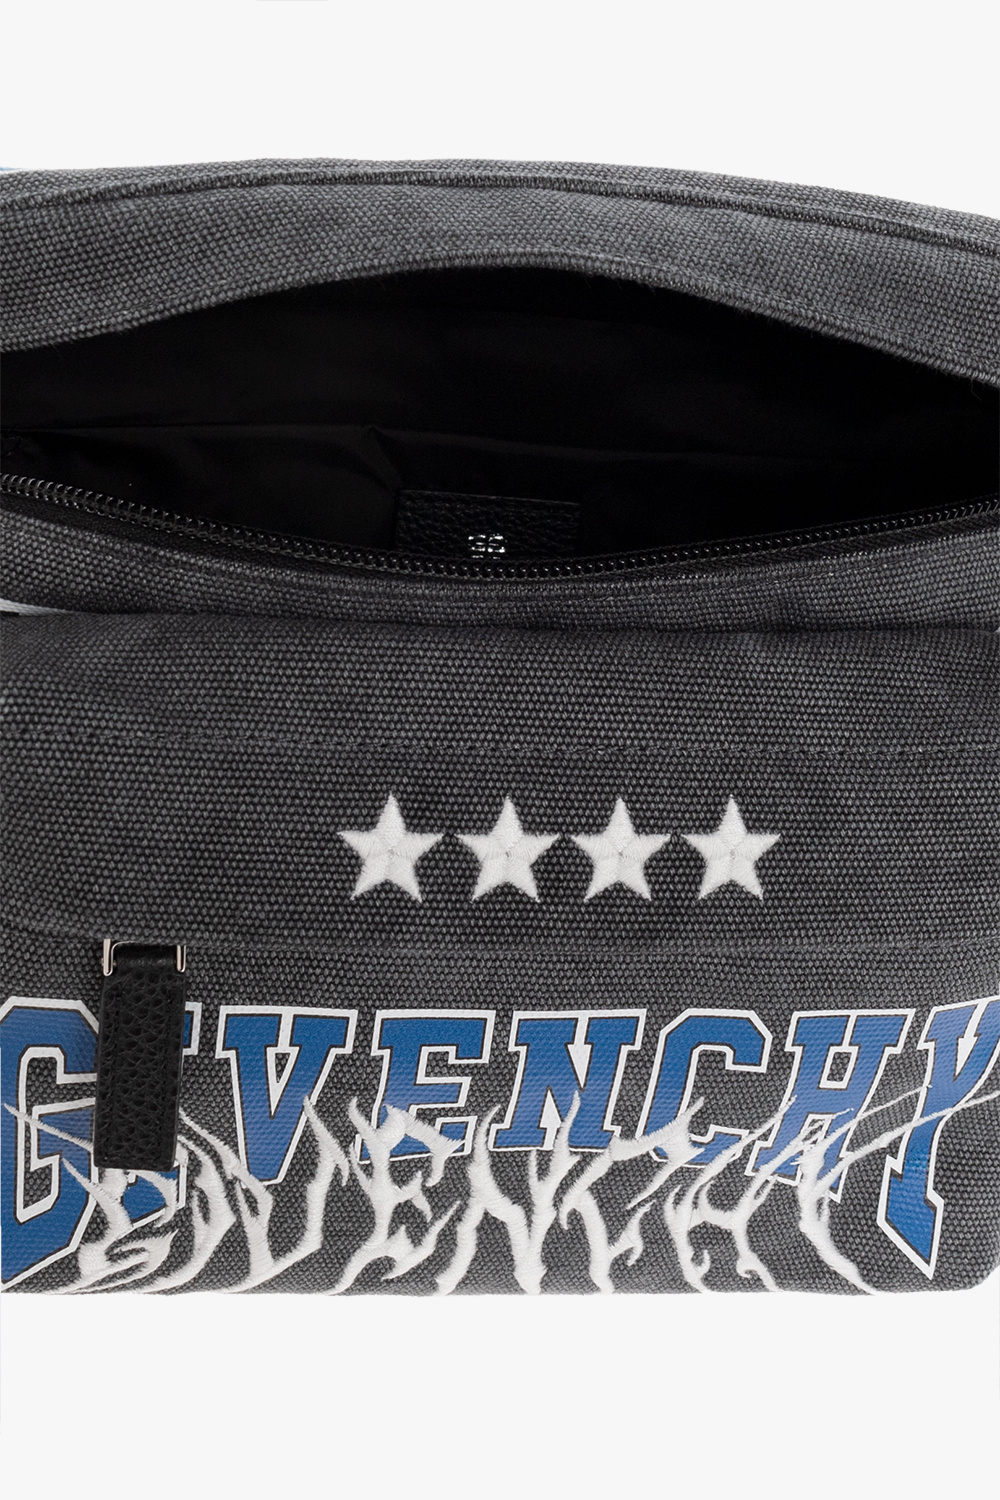 Givenchy ‘Essentiel U’ belt bag